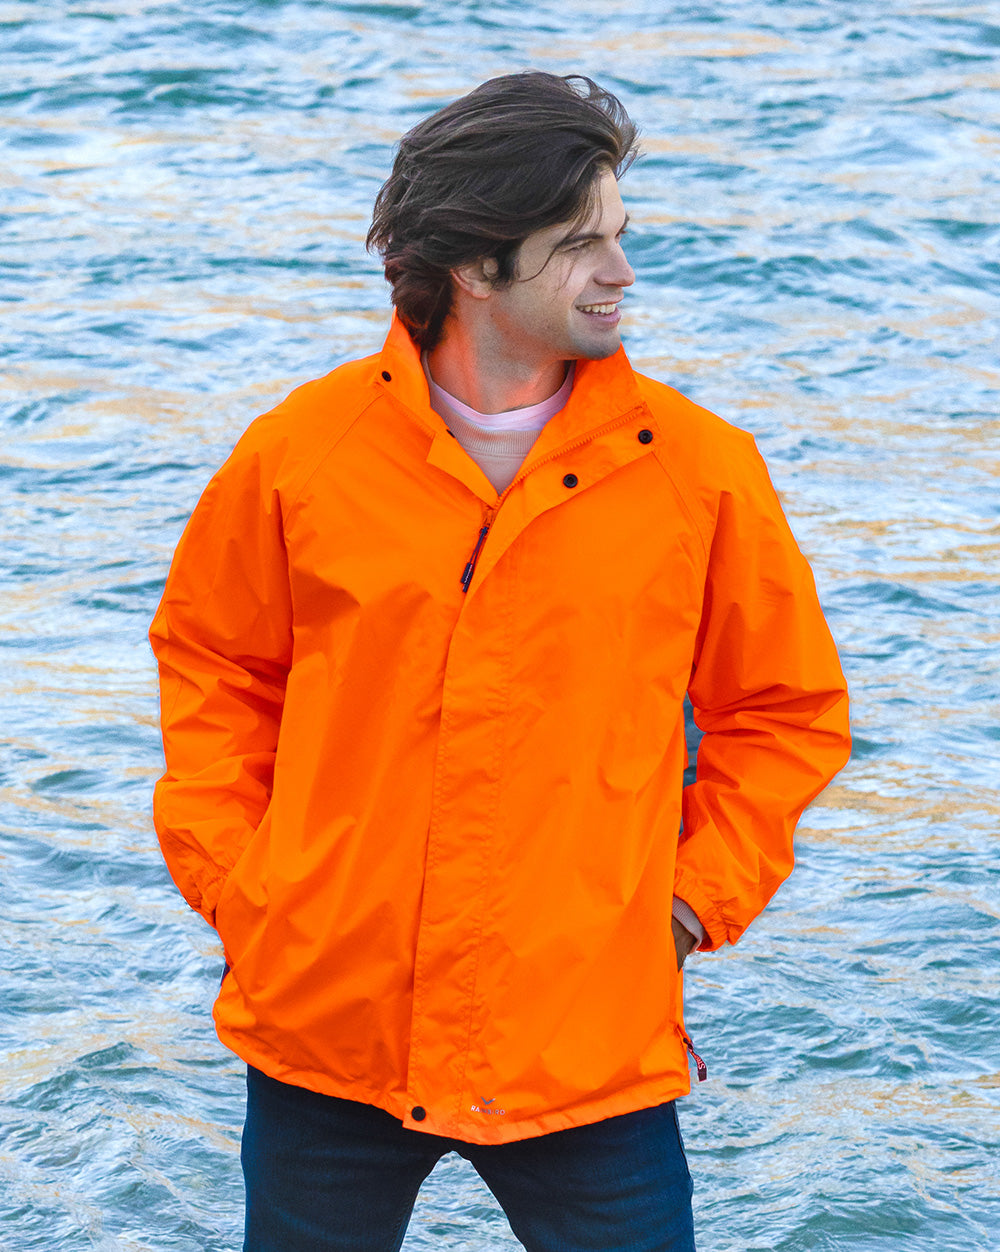 STOWaway Jacket in Fluoro Orange